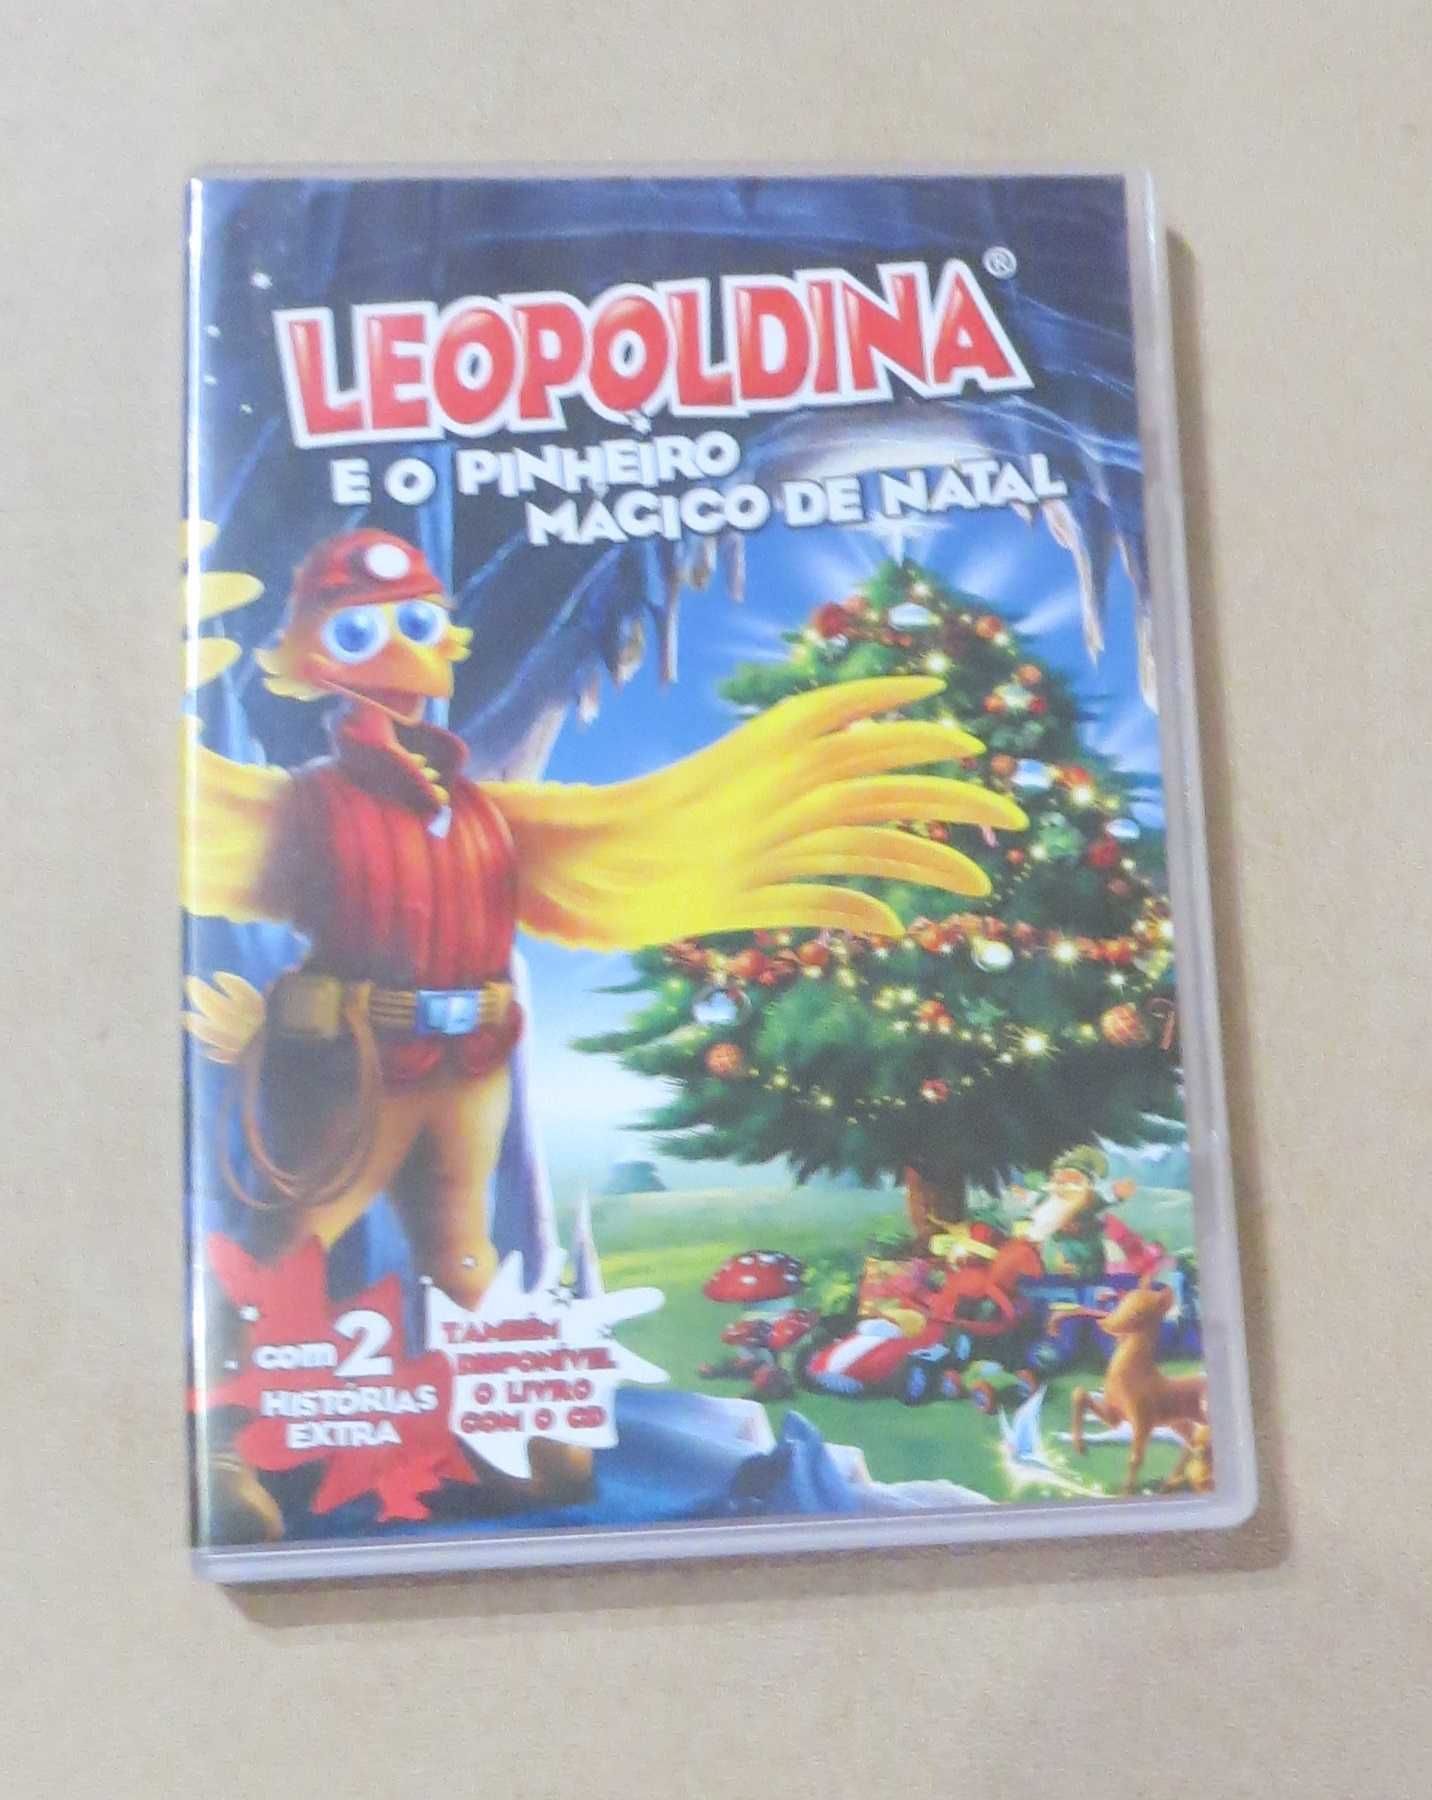 DVD Leopoldina e o Pinheiro Mágico + 2 histórias extra